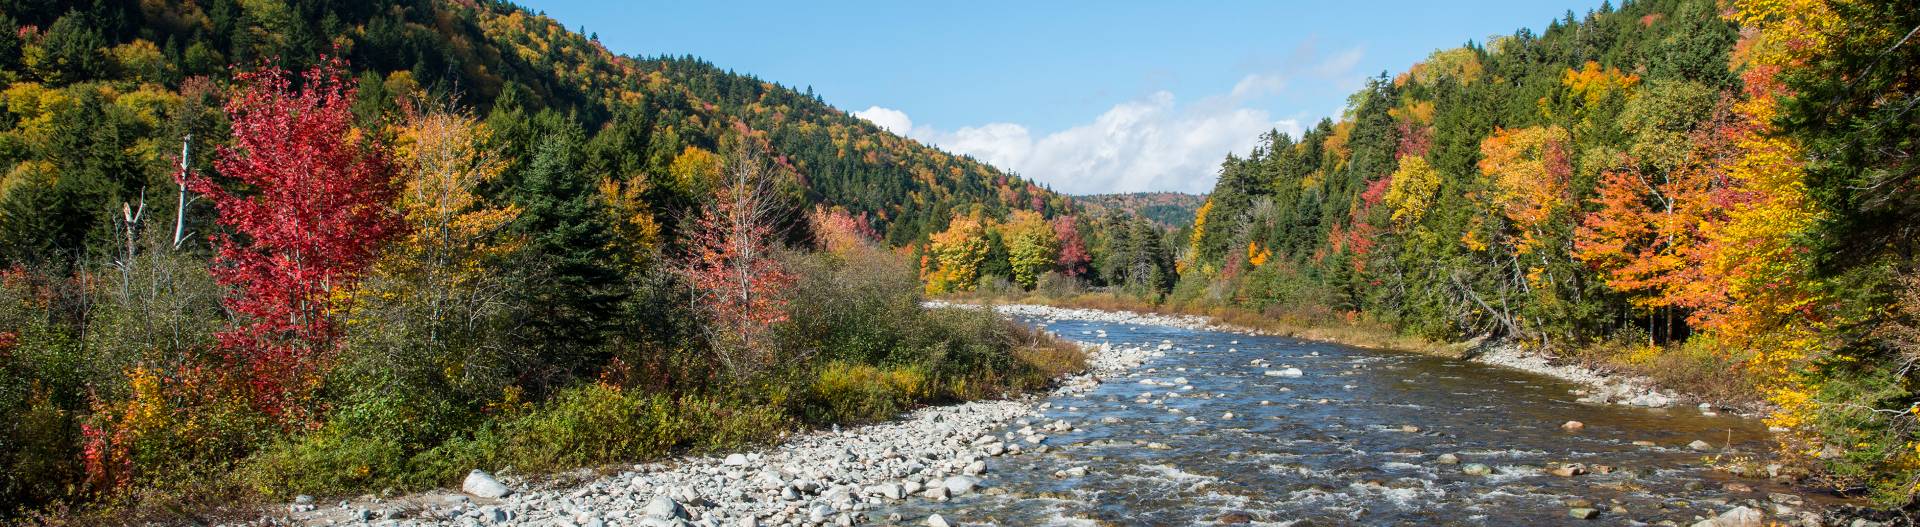 Une rivière en automne